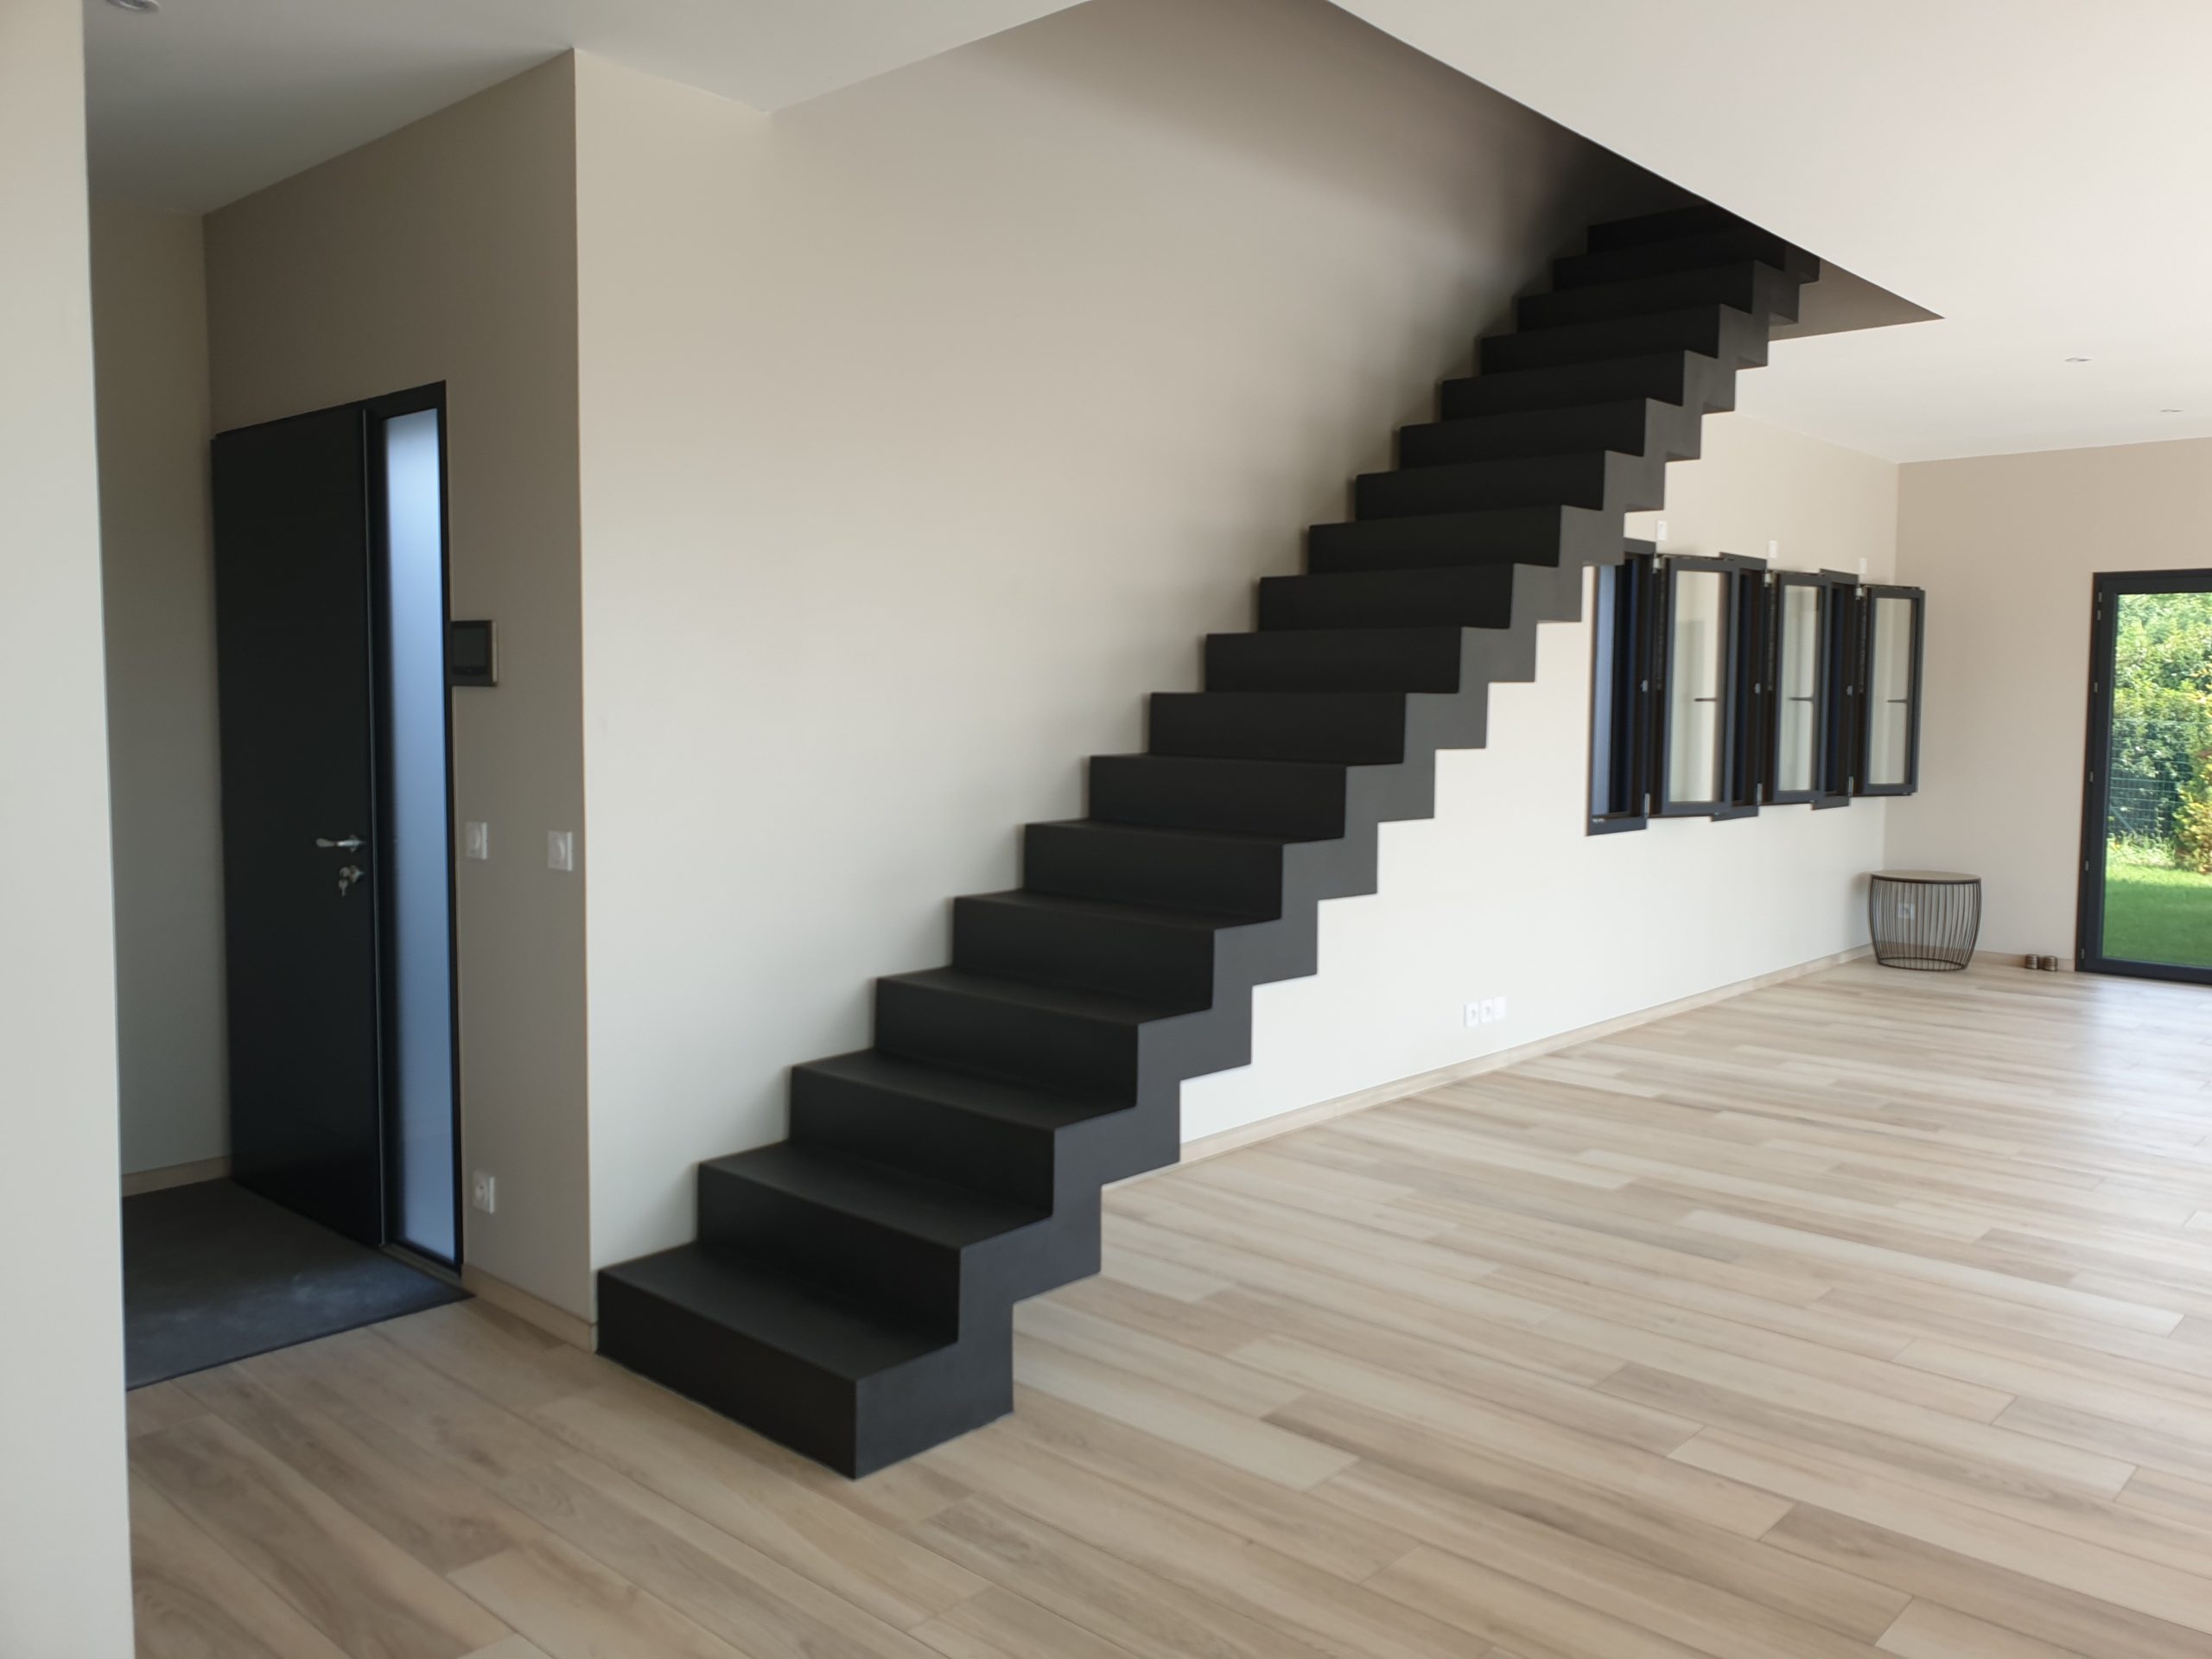 Béton ciré appliqué sur un escalier design placé à l'entrée d'une maison individuelle